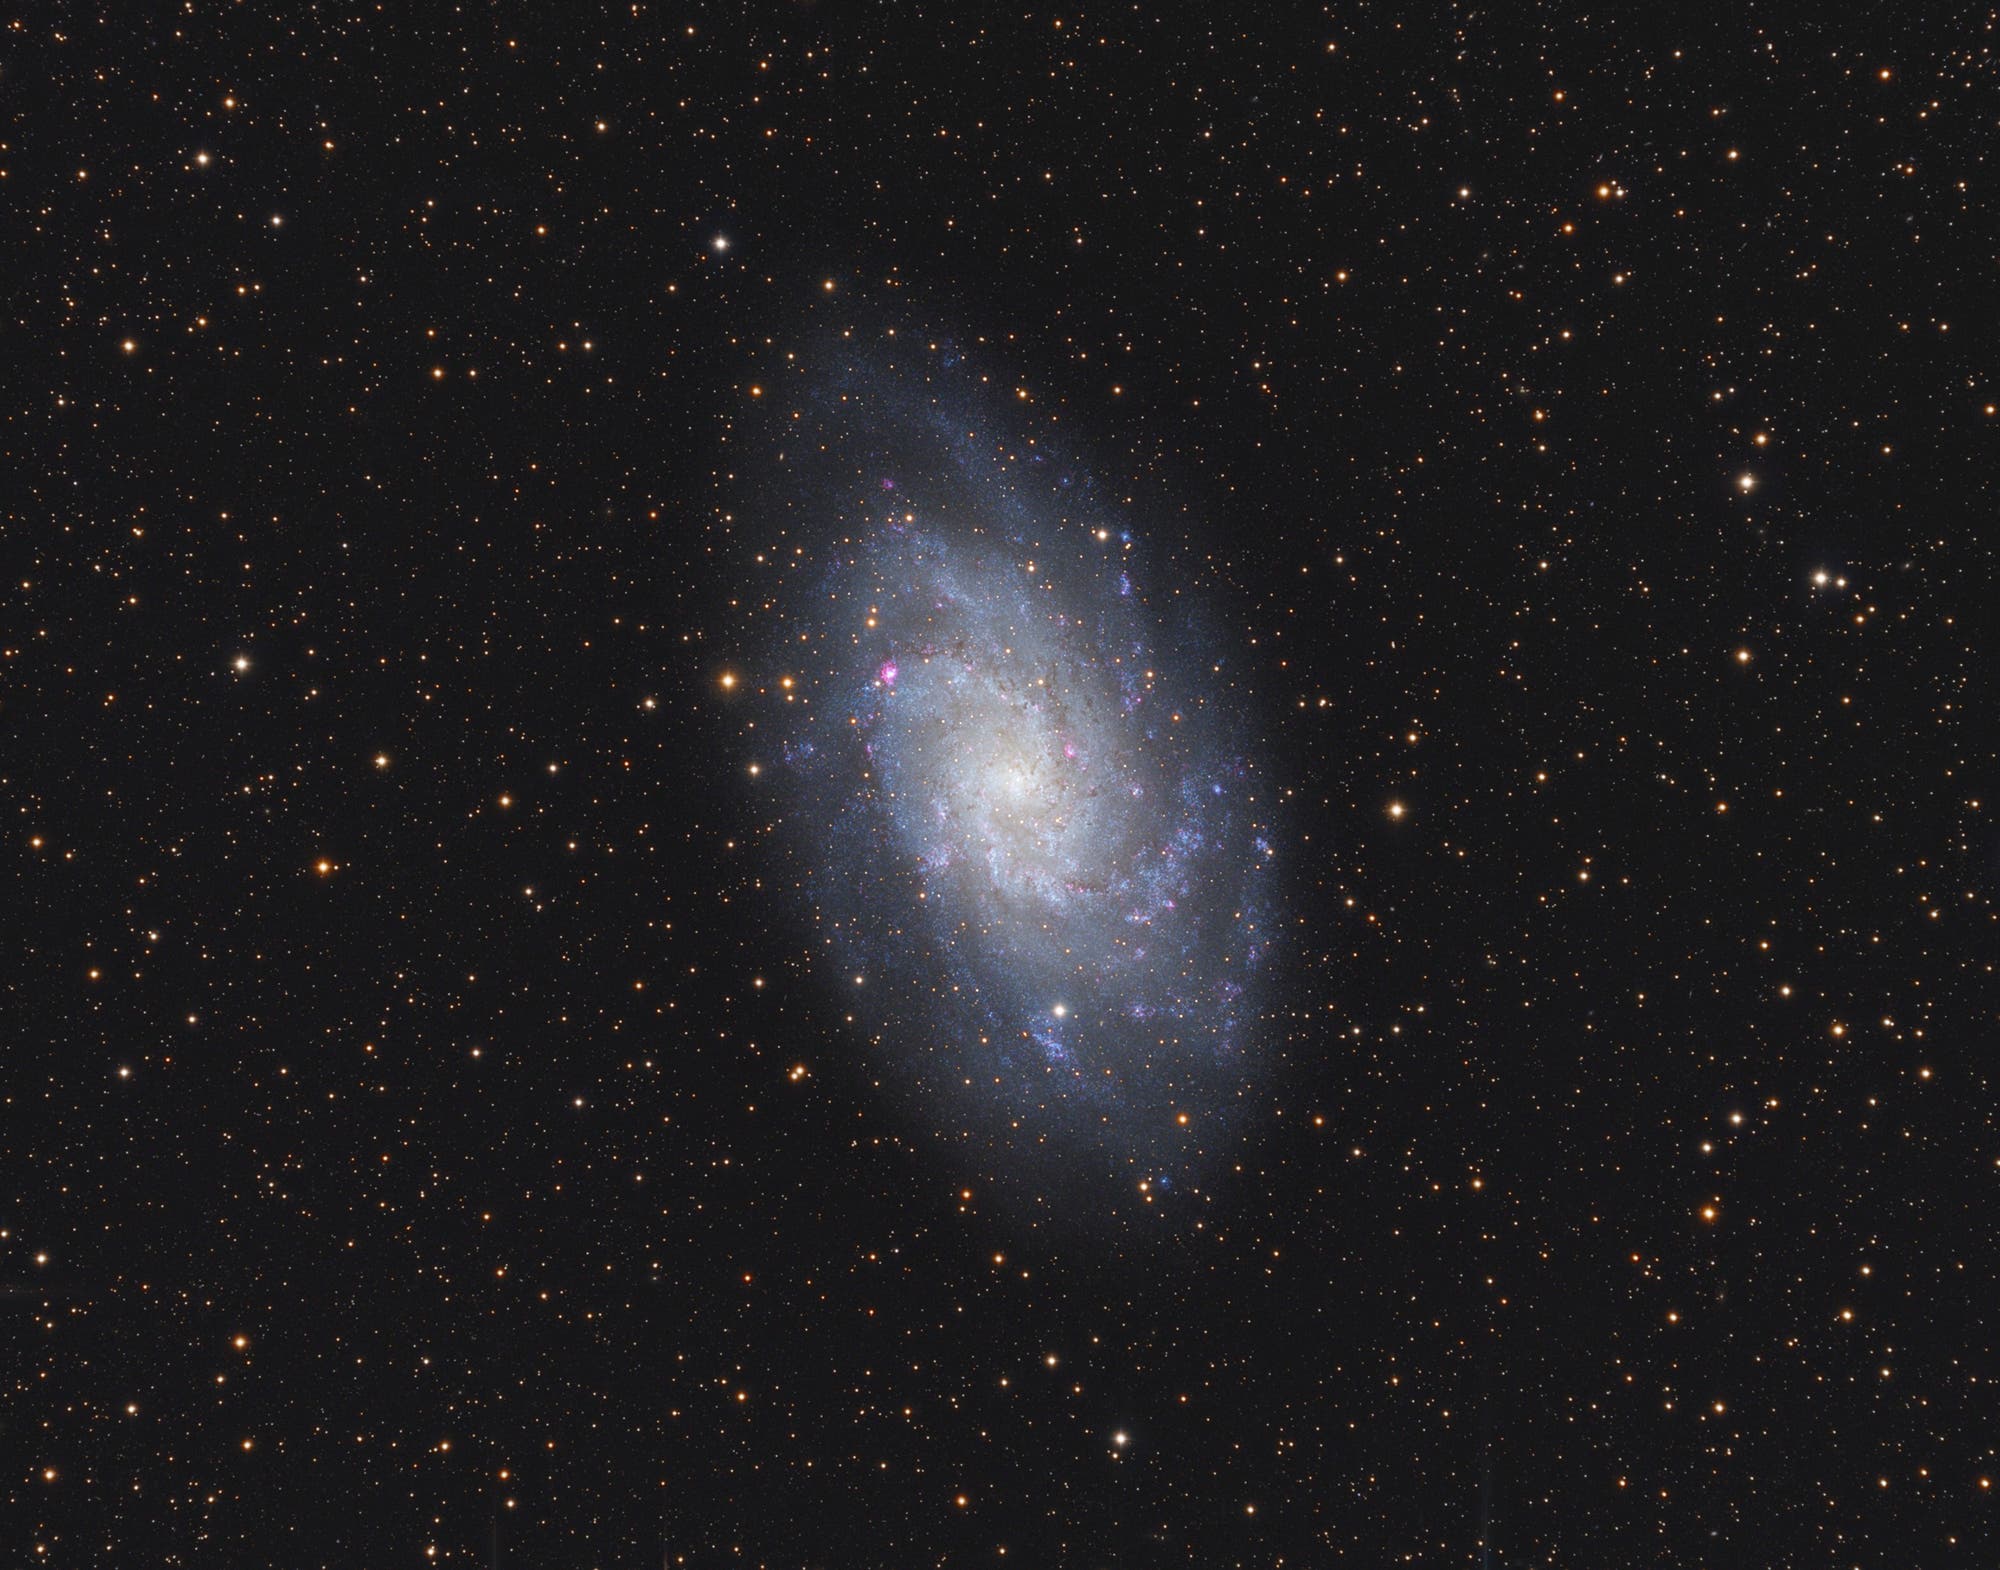 Messier 33, die Dreiecksgalaxie